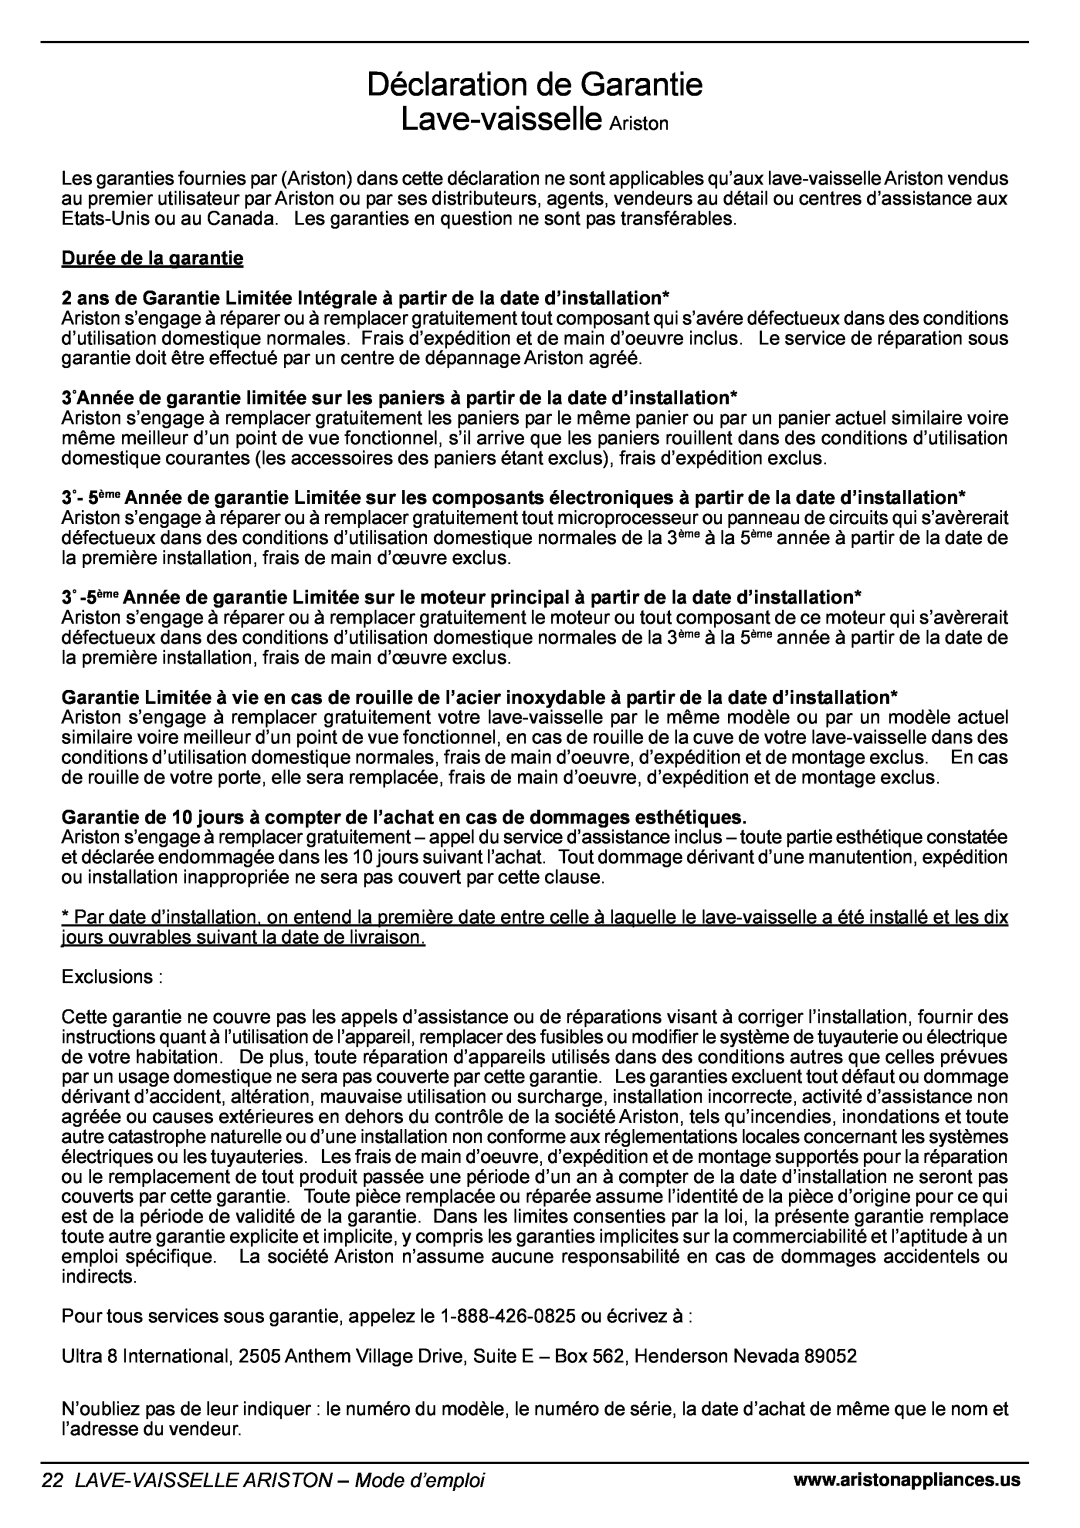 Ariston LL 64 B-S-W manual Déclaration de Garantie Lave-vaisselle Ariston, LAVE-VAISSELLEARISTON - Mode d’emploi 